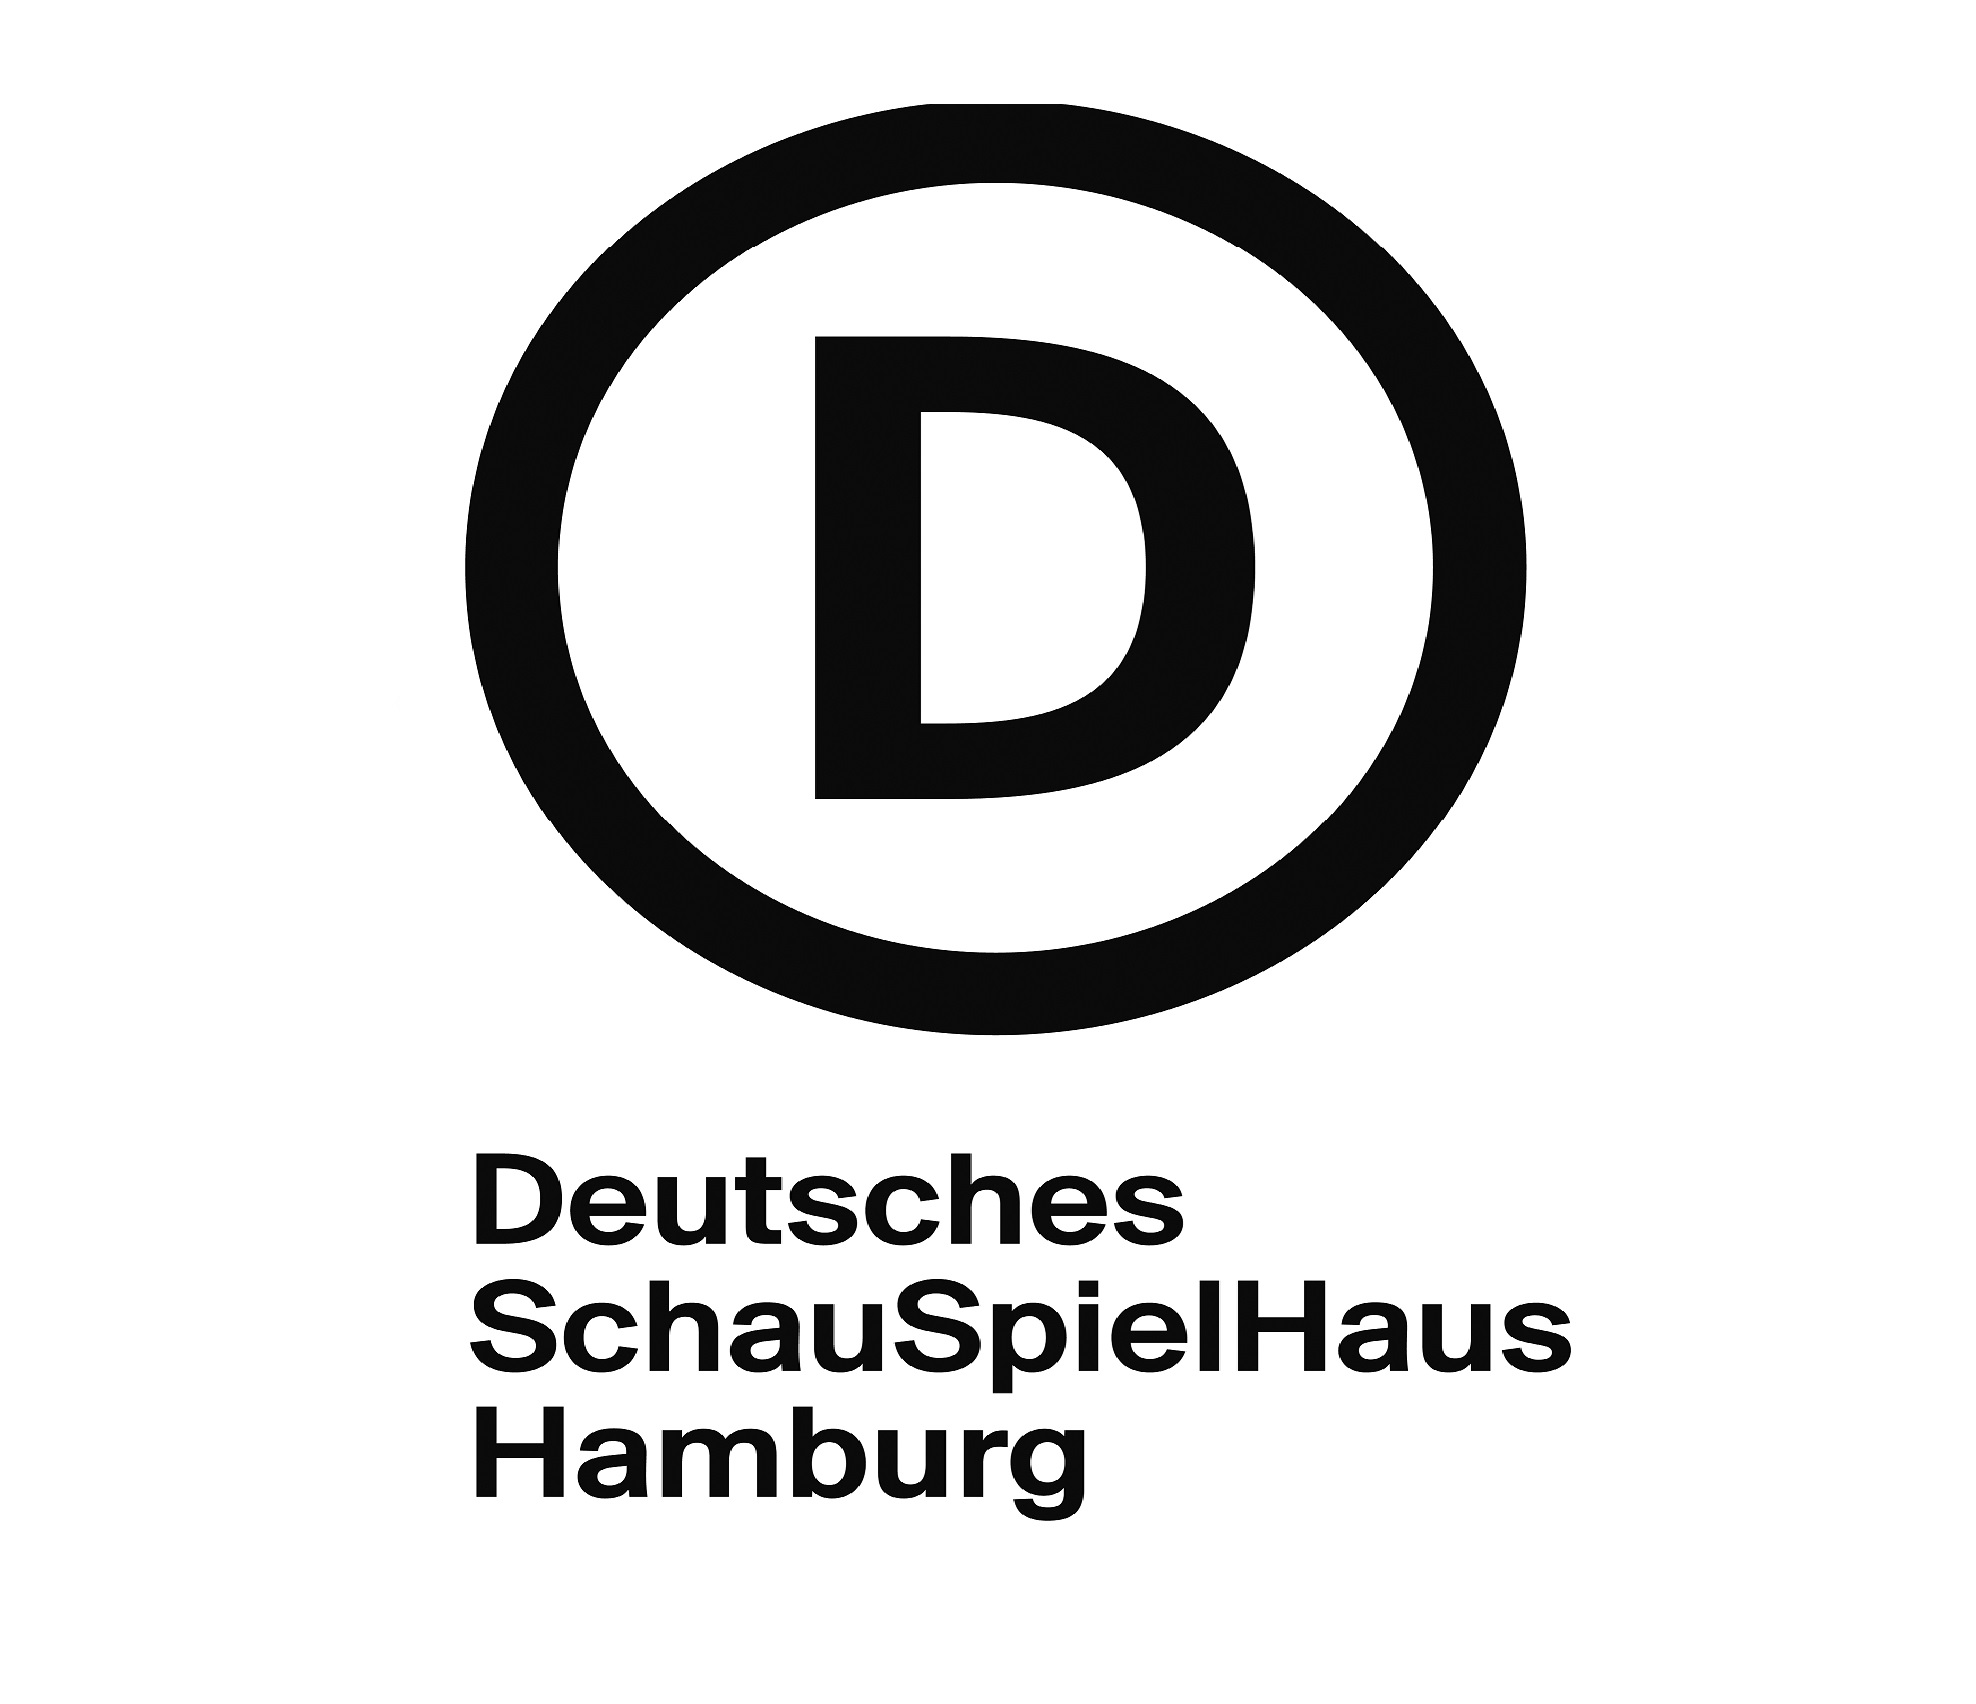 Deutsches SchauSpielHaus